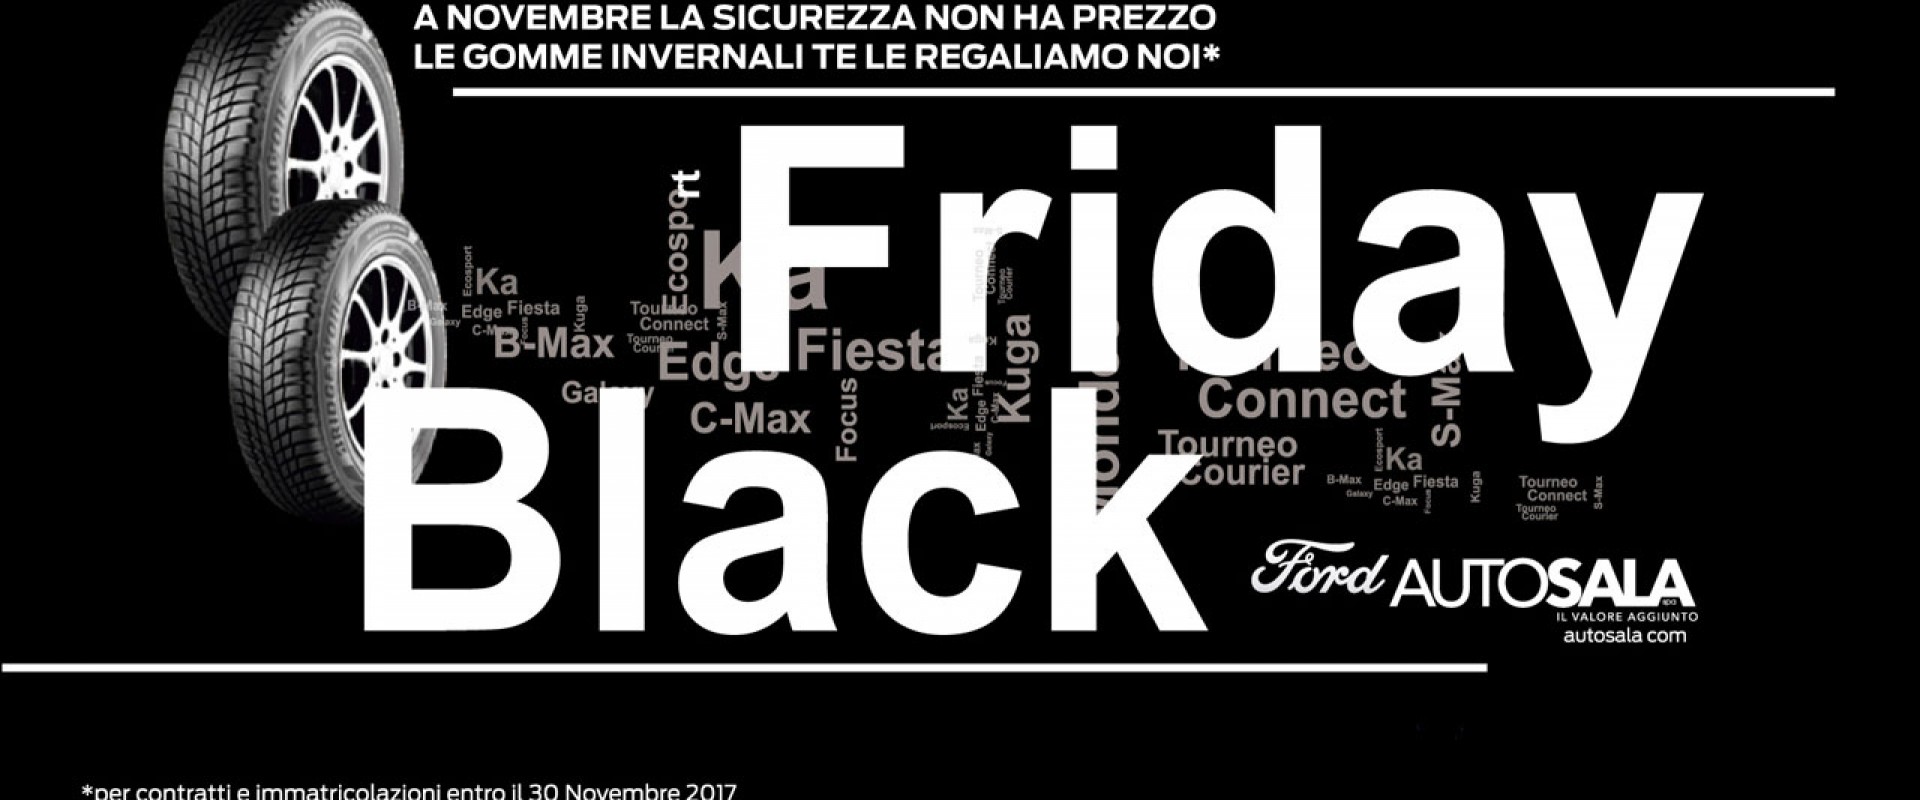 Black Friday Concessionaria Autosala. Se acquisti un'auto entro il 30 novembre, i pneumatici invernali te li regaliamo noi!